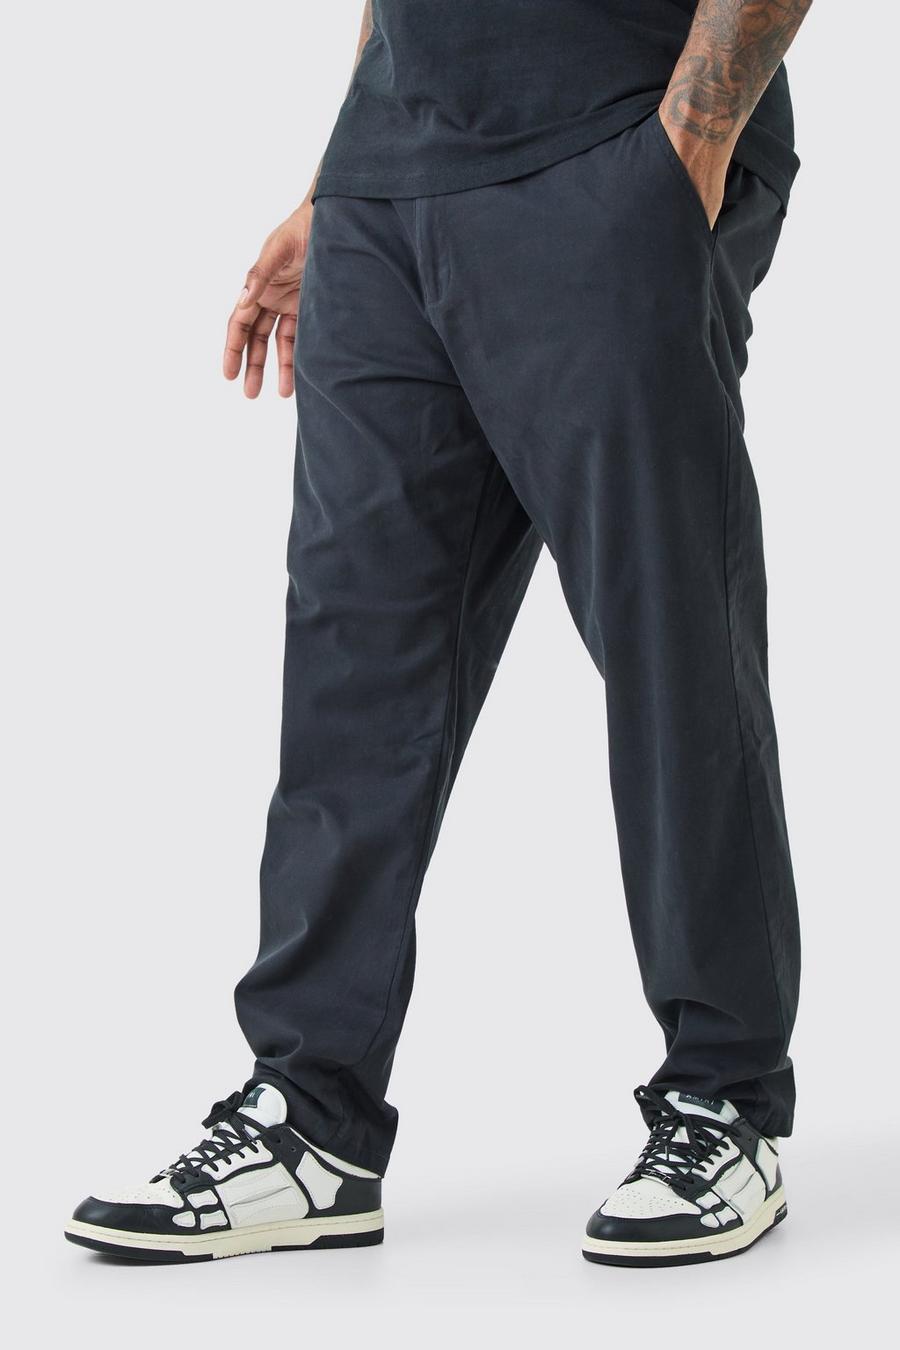 Pantalón Plus chino pitillo con cintura fija, Black